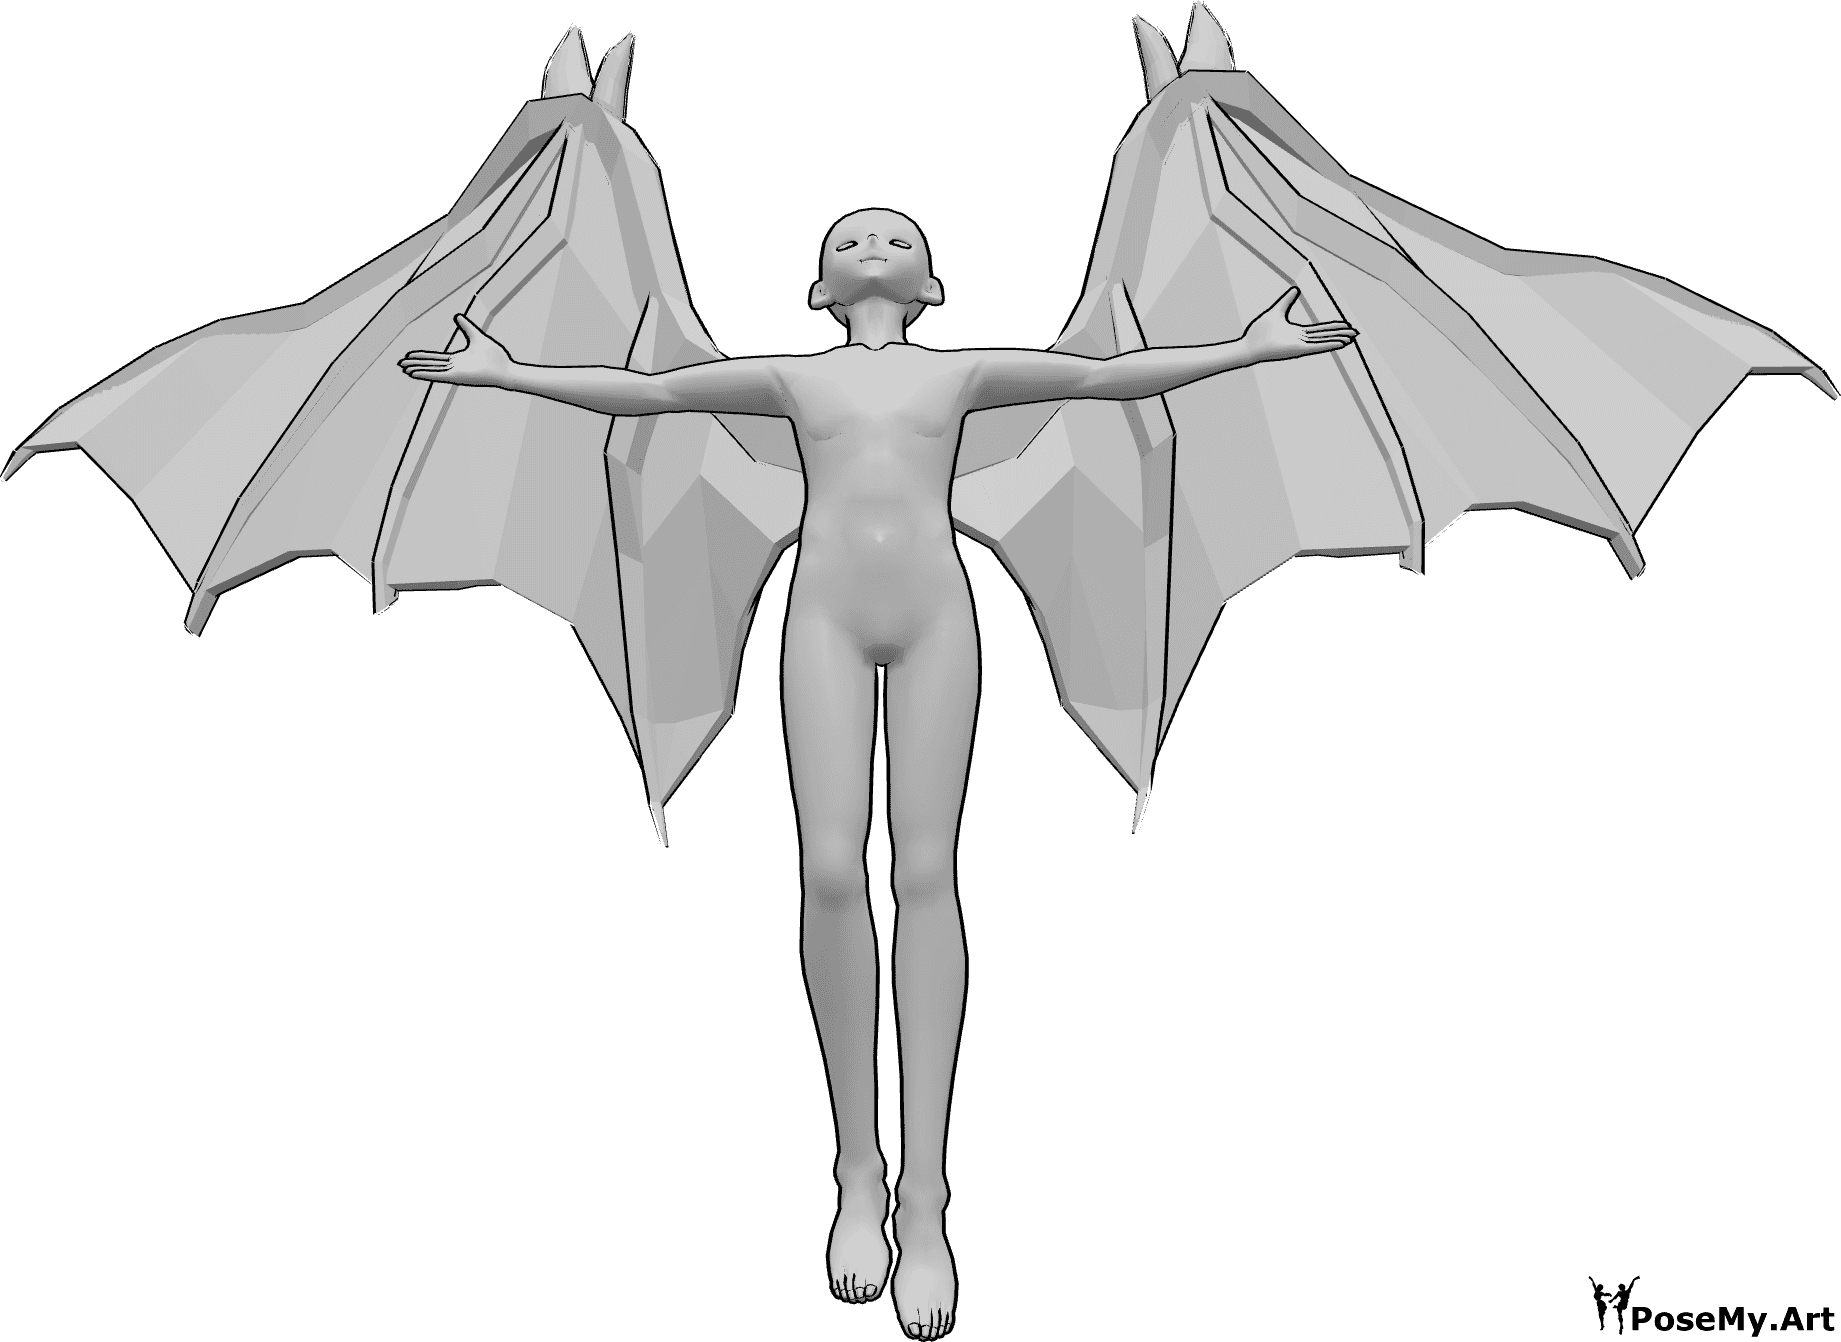 Posen-Referenz- Anime Teufel fliegende Pose - Anime-Männchen mit Teufelsflügeln fliegt, schaut nach oben und hebt die Hände